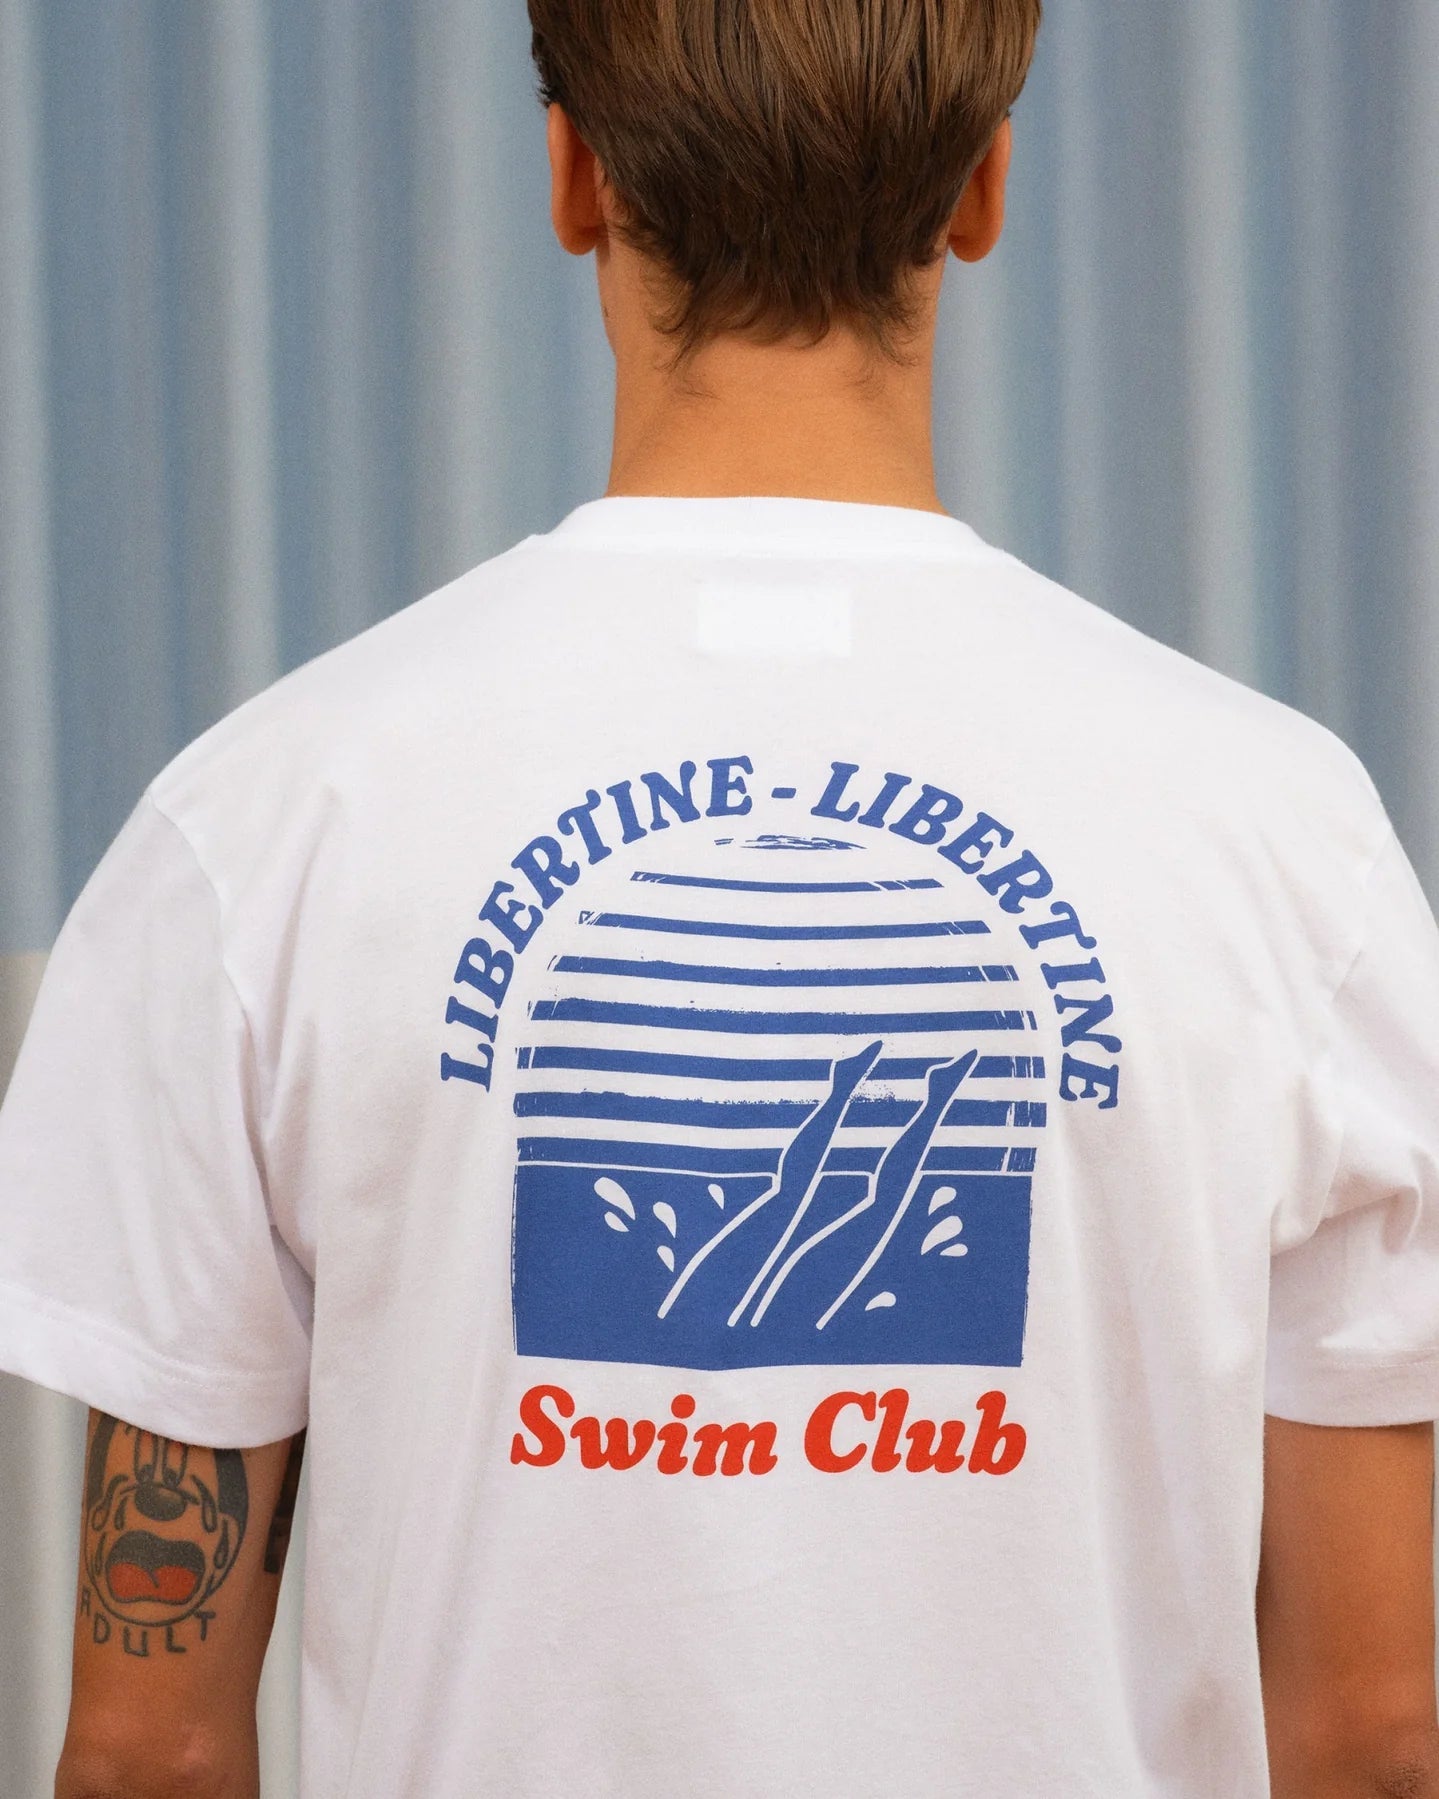 Libertine-Libertine Beat Swim Club T-Shirt - White T-shirt Libertine-Libertine 